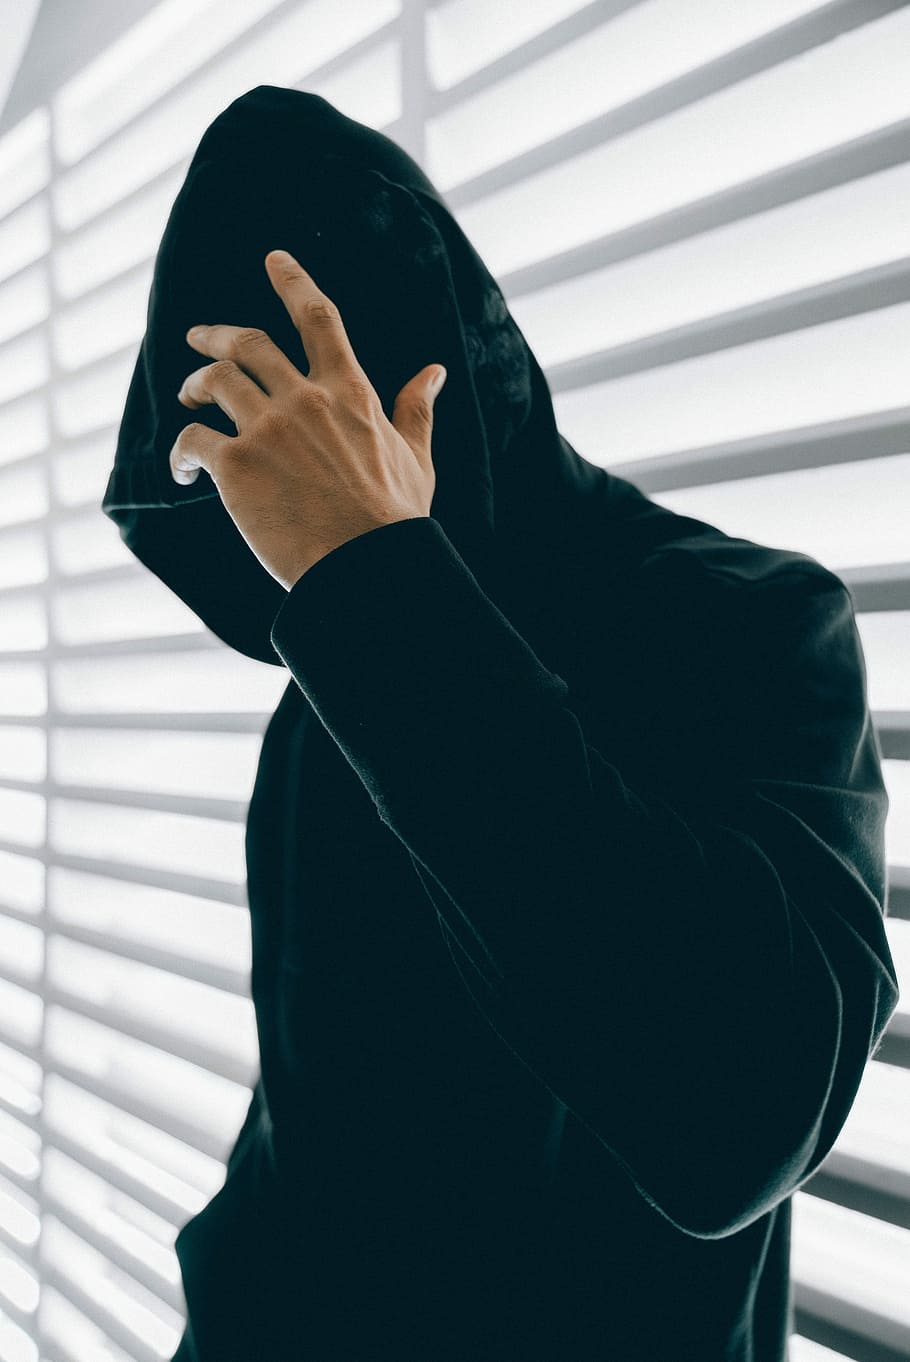 person wearing green hooded jacket inside room, man wearing black velvet hoodie standing beside window blinds